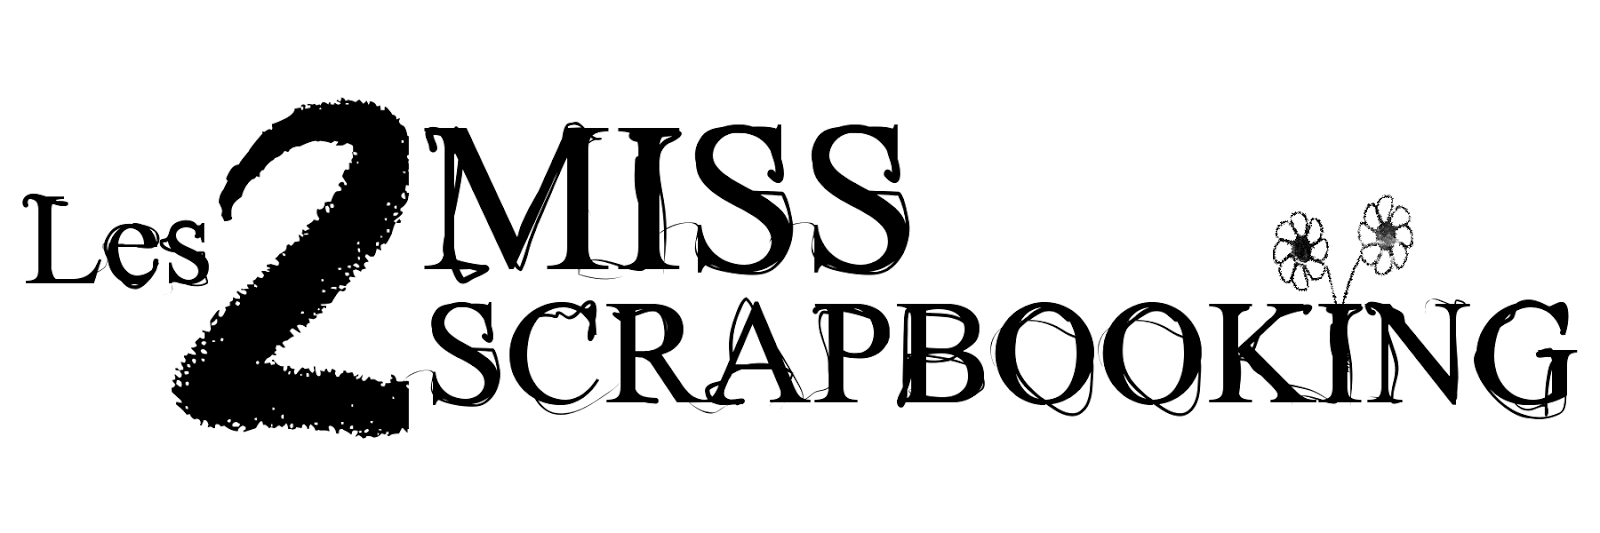 les 2 Miss Scrapbooking